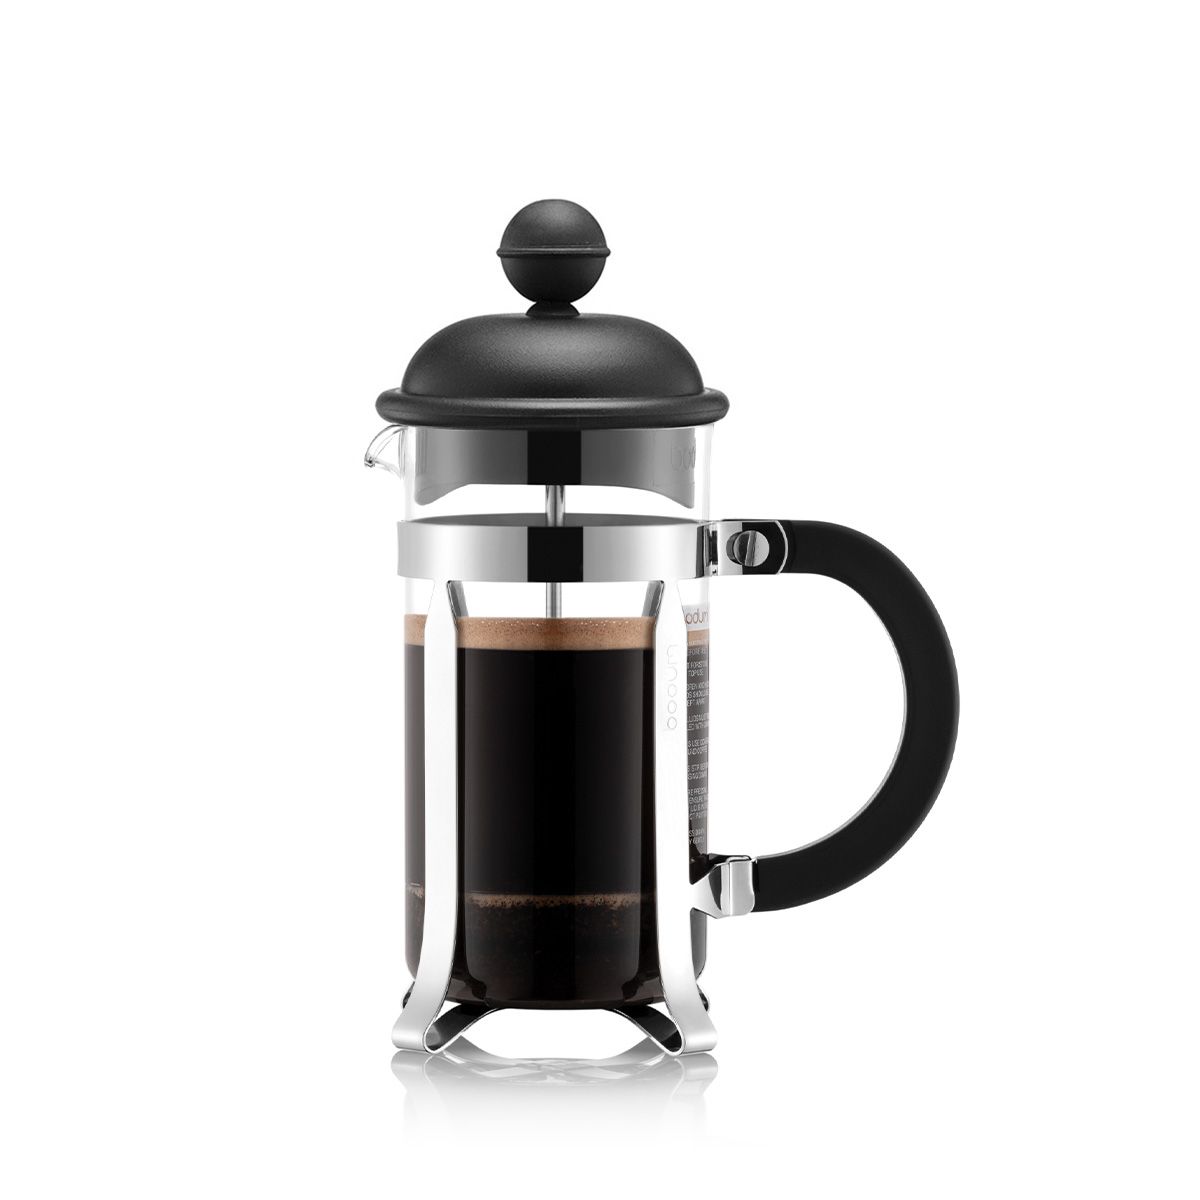 Bodum Caffettiera kaffebryggare svart, 3 koppar